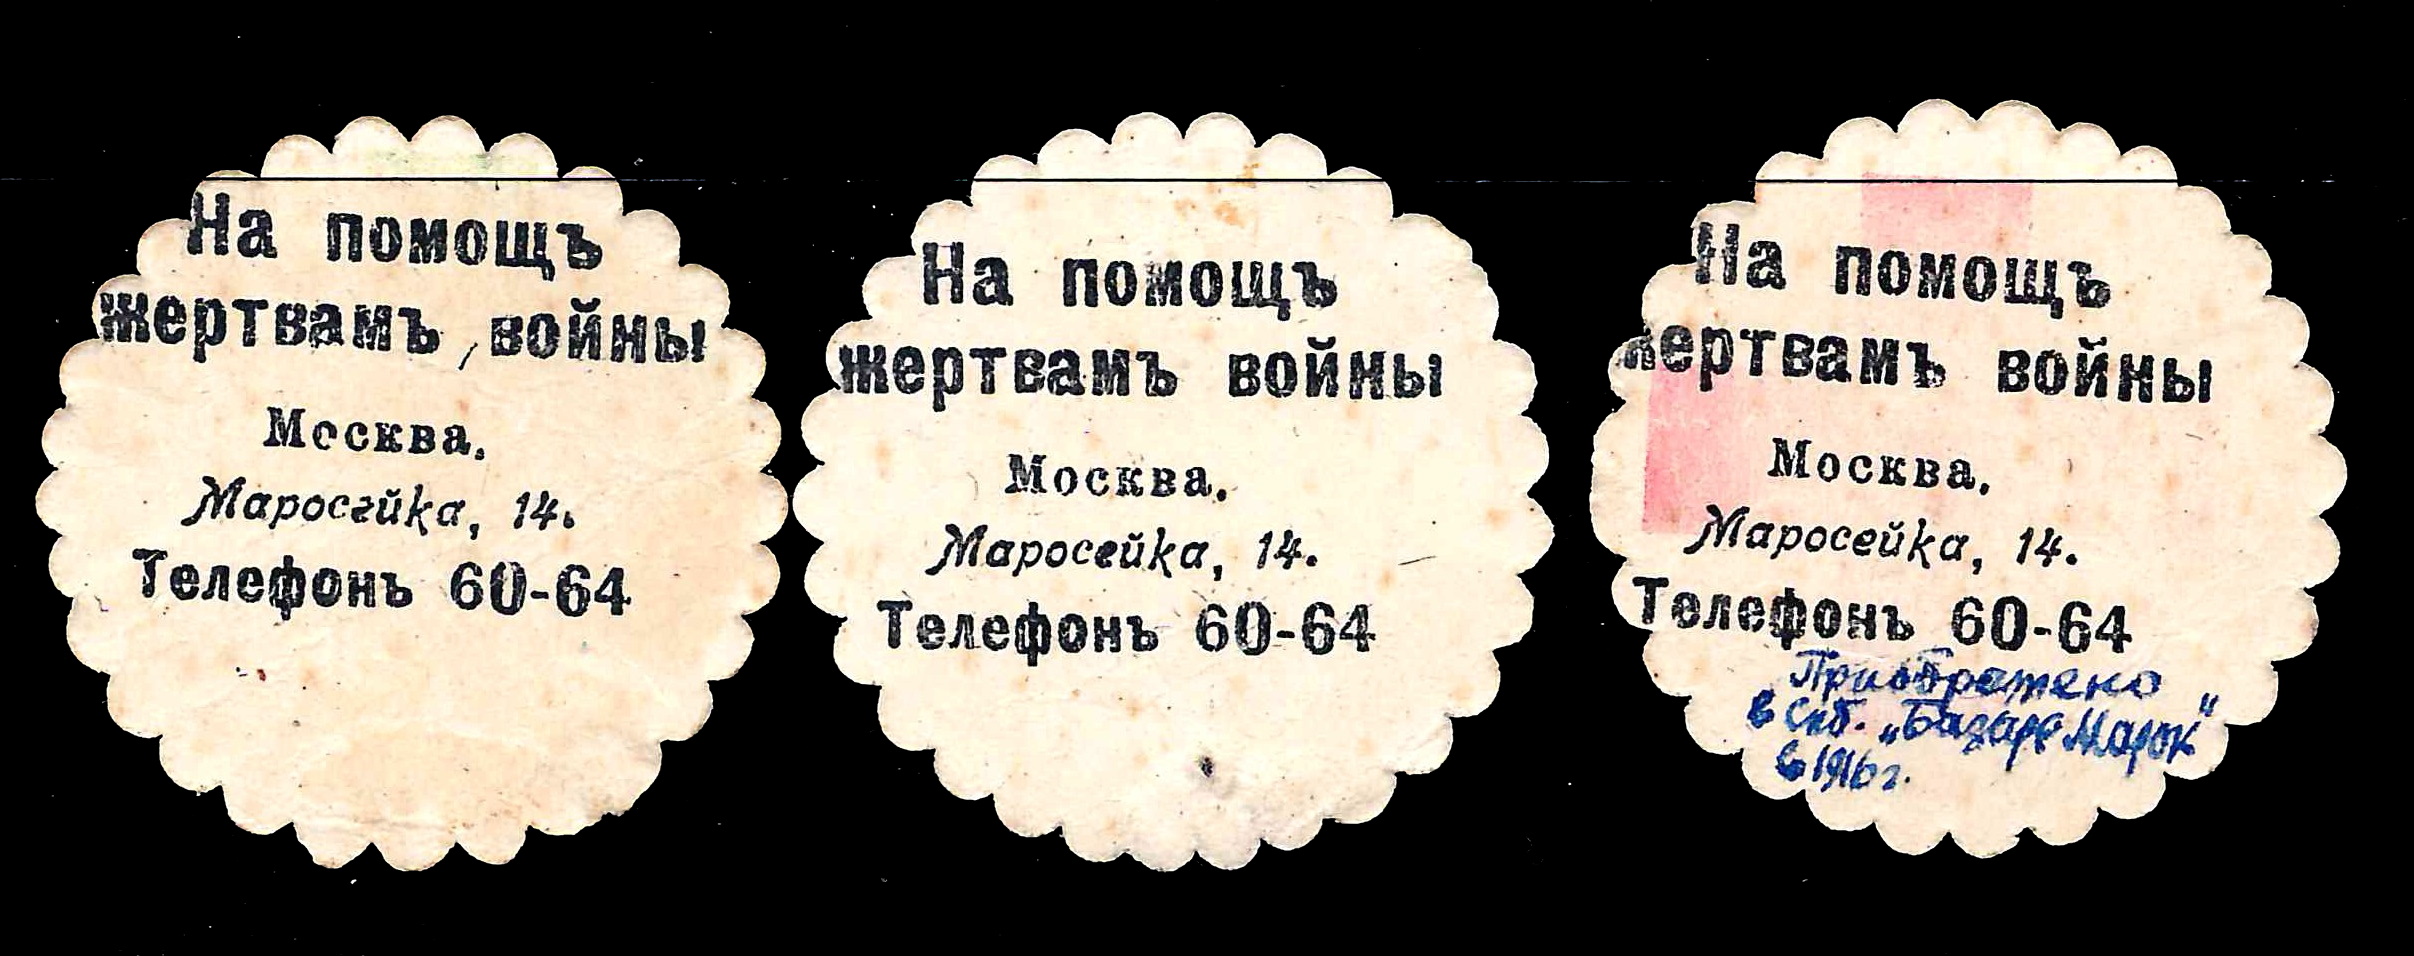 Москва. 3 бумажных жетона благотворительного сбора «На помощь жертвам войны». 1910-е годы.